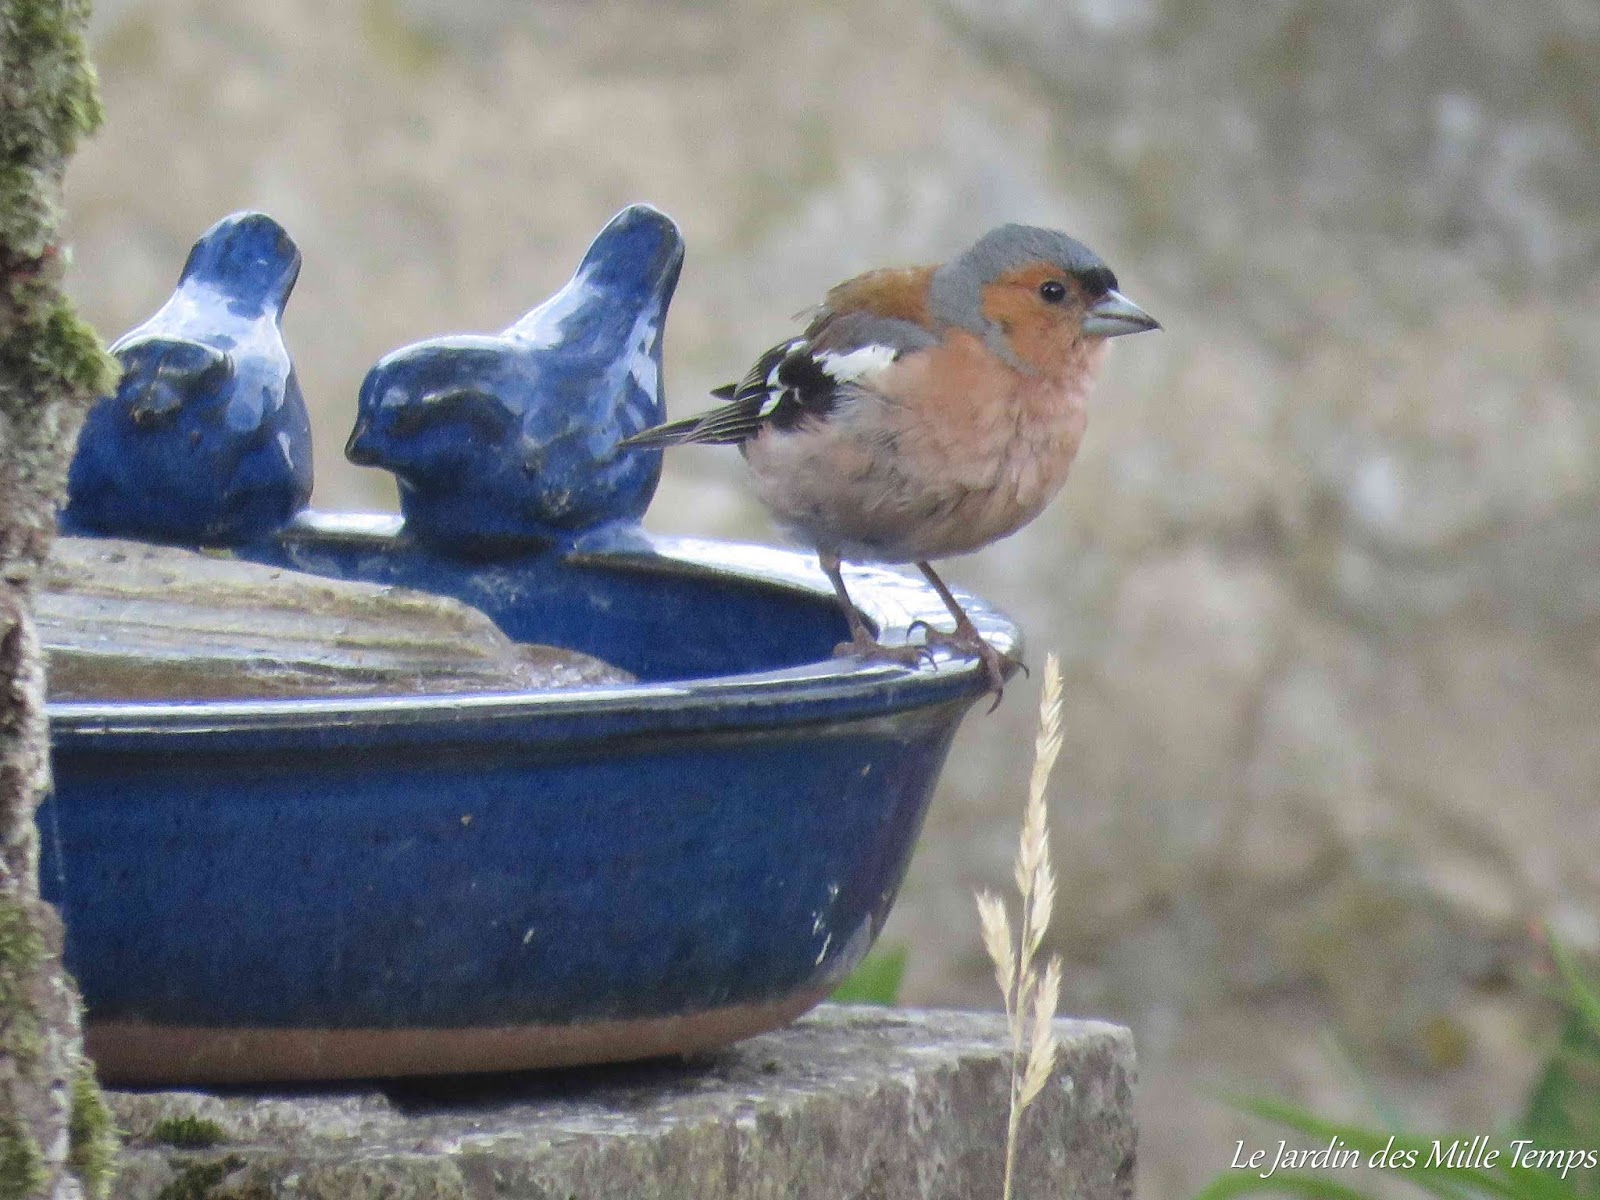 Nourrir les oiseaux l'hiver : bonne ou mauvaise idée?, Blogue